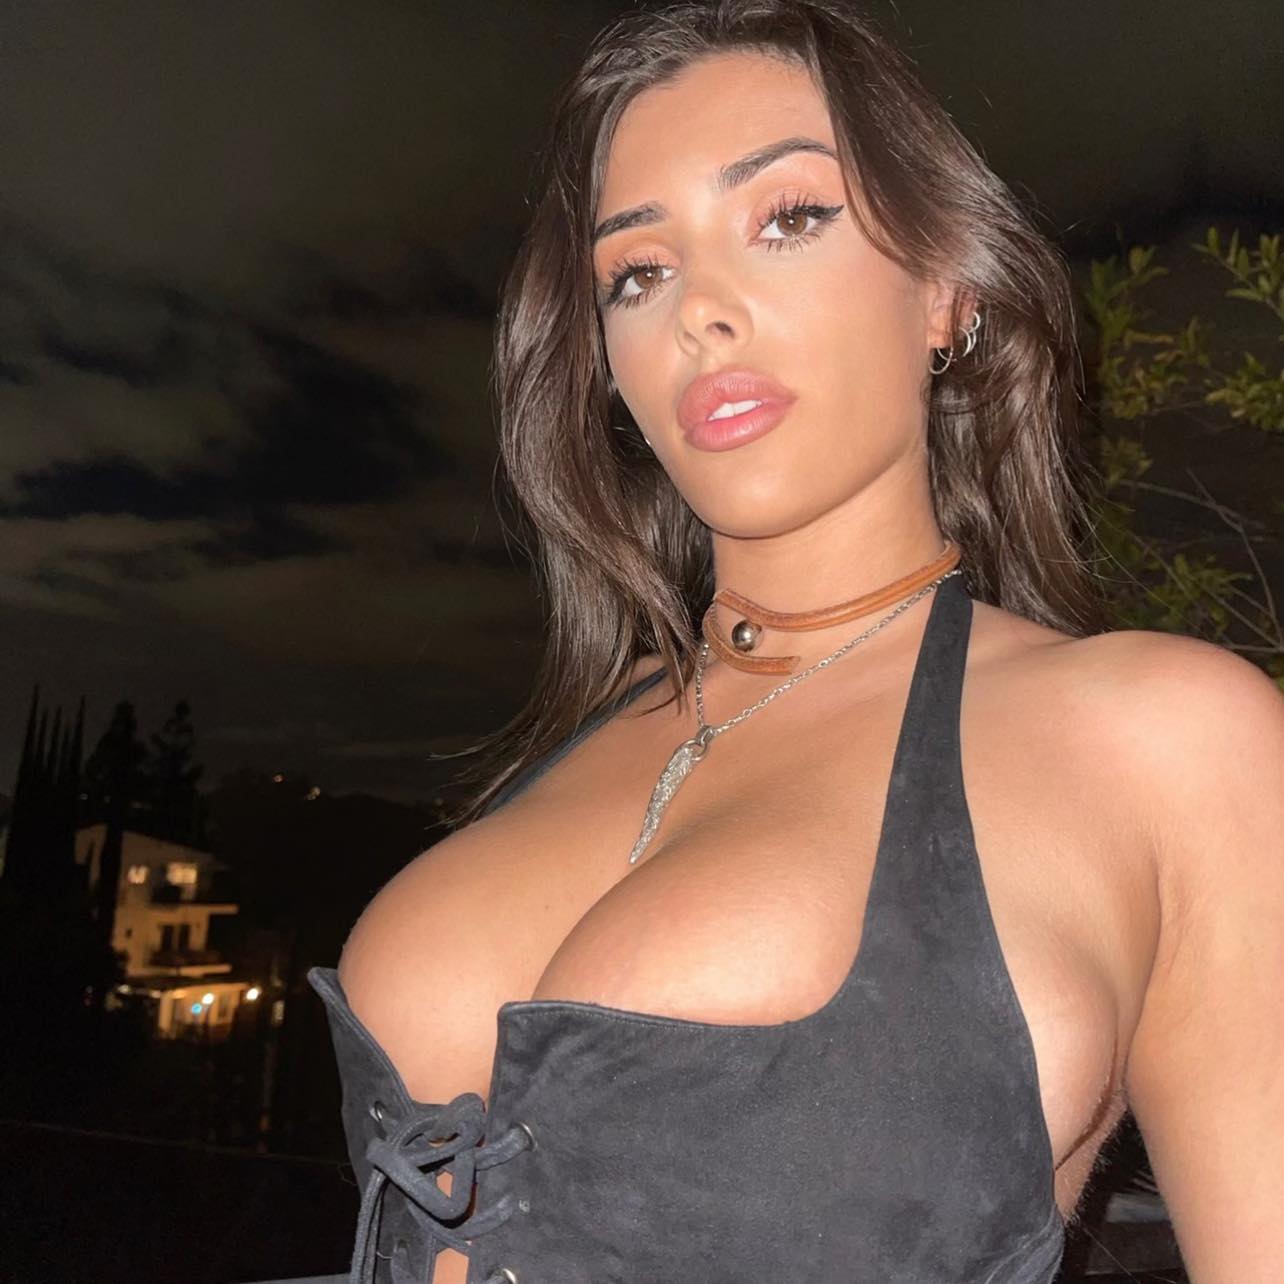 danilo ragasa recommends hot models big tits pic